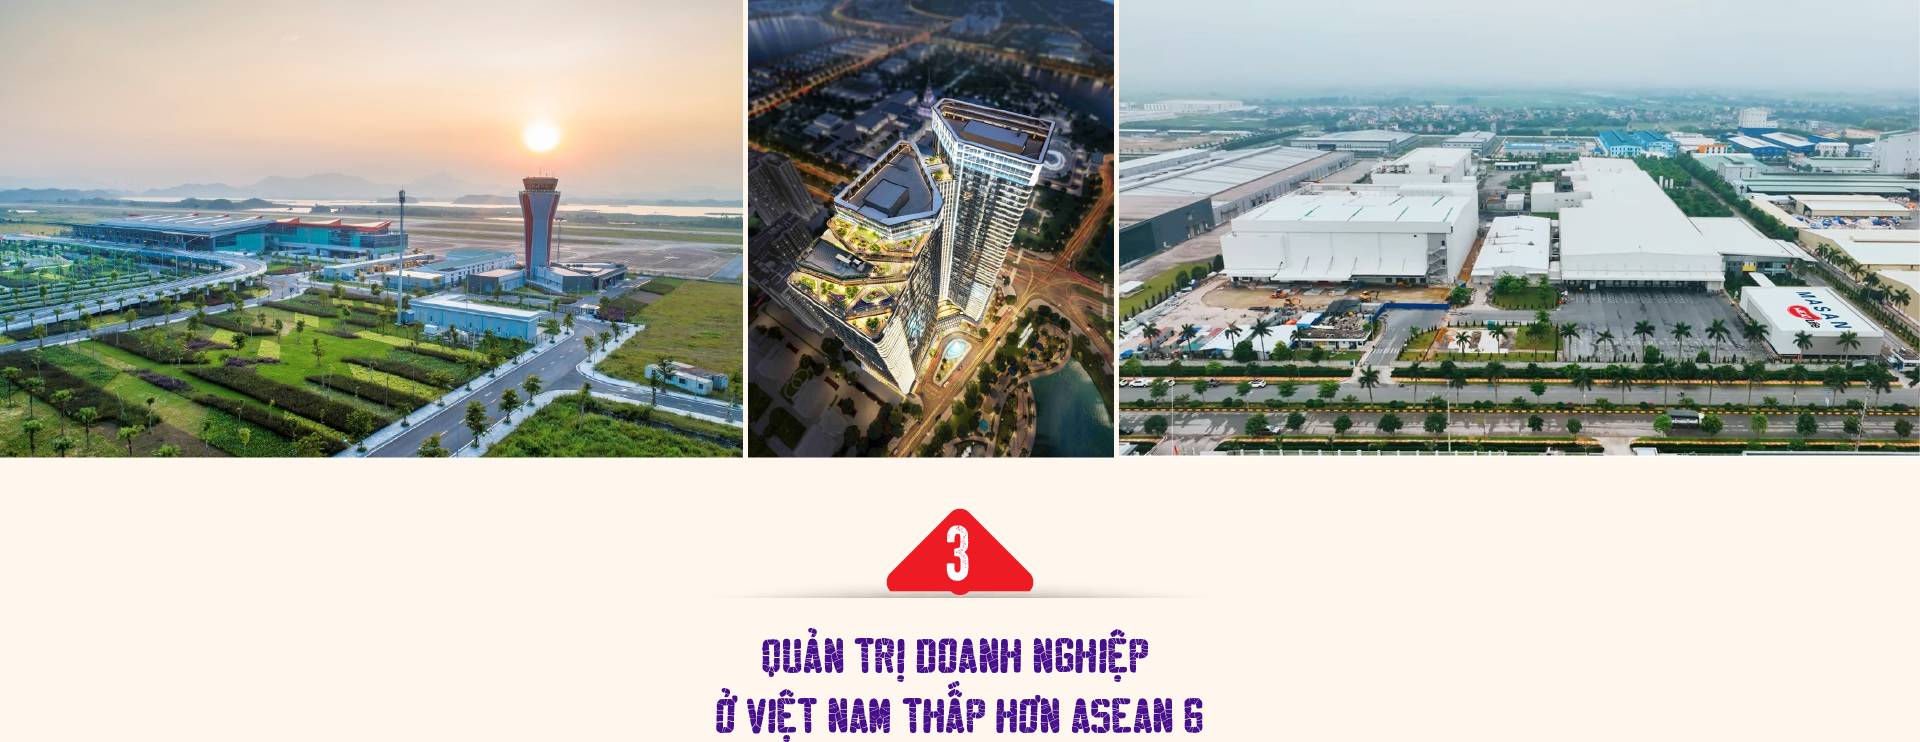 Nâng cao năng lực quản trị cho doanh nghiệp tư nhân Việt Nam - Ảnh 6